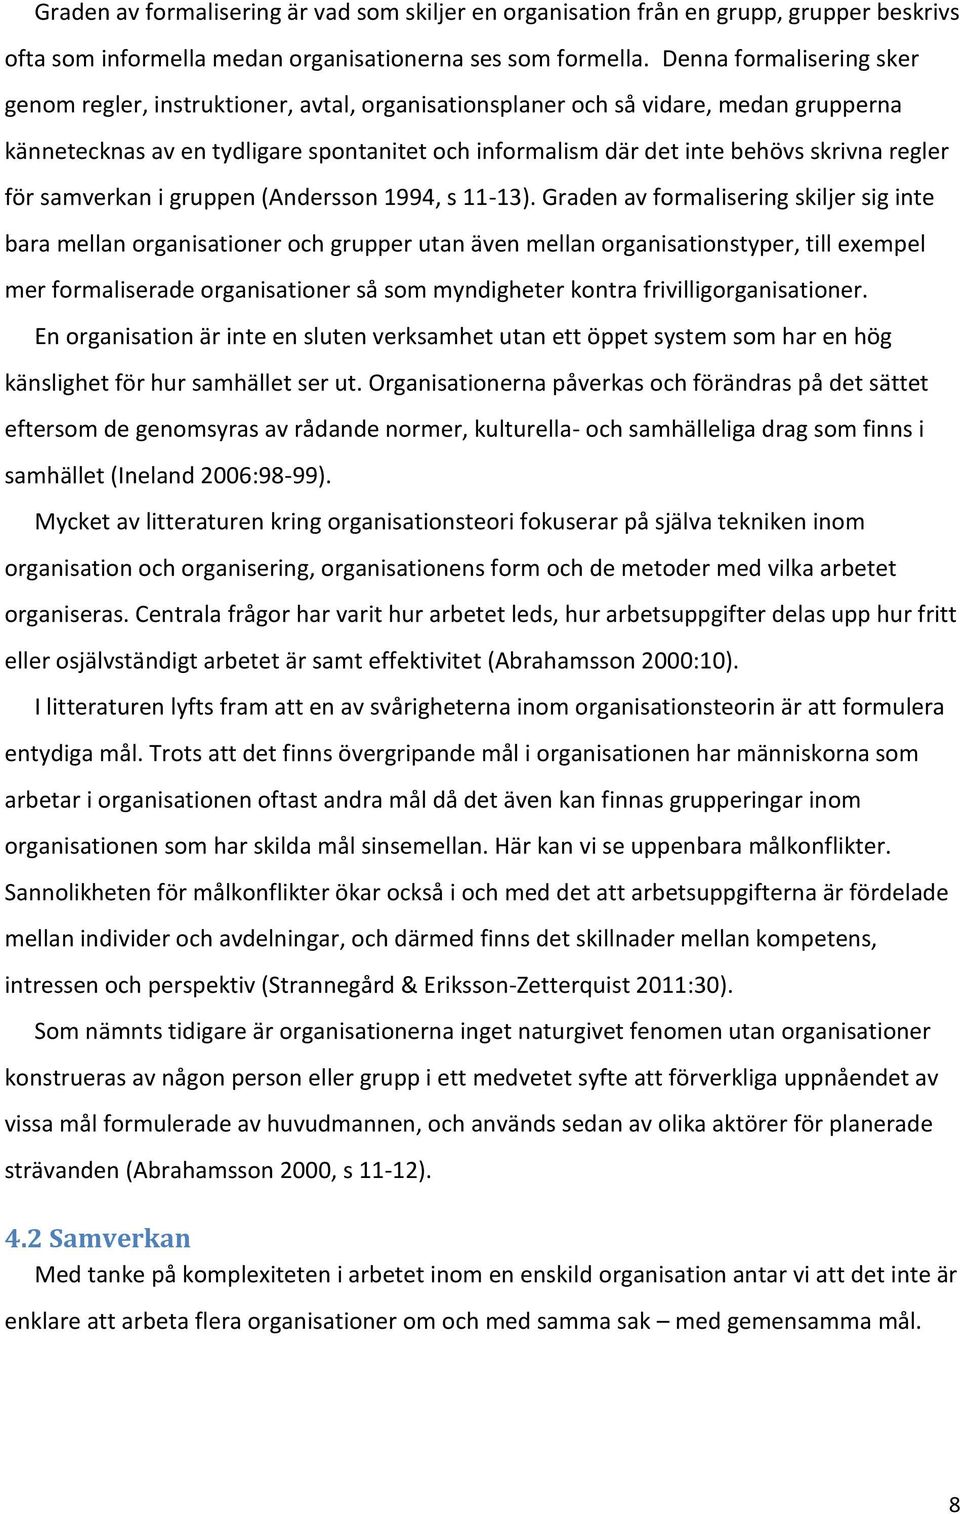 regler för samverkan i gruppen (Andersson 1994, s 11-13).